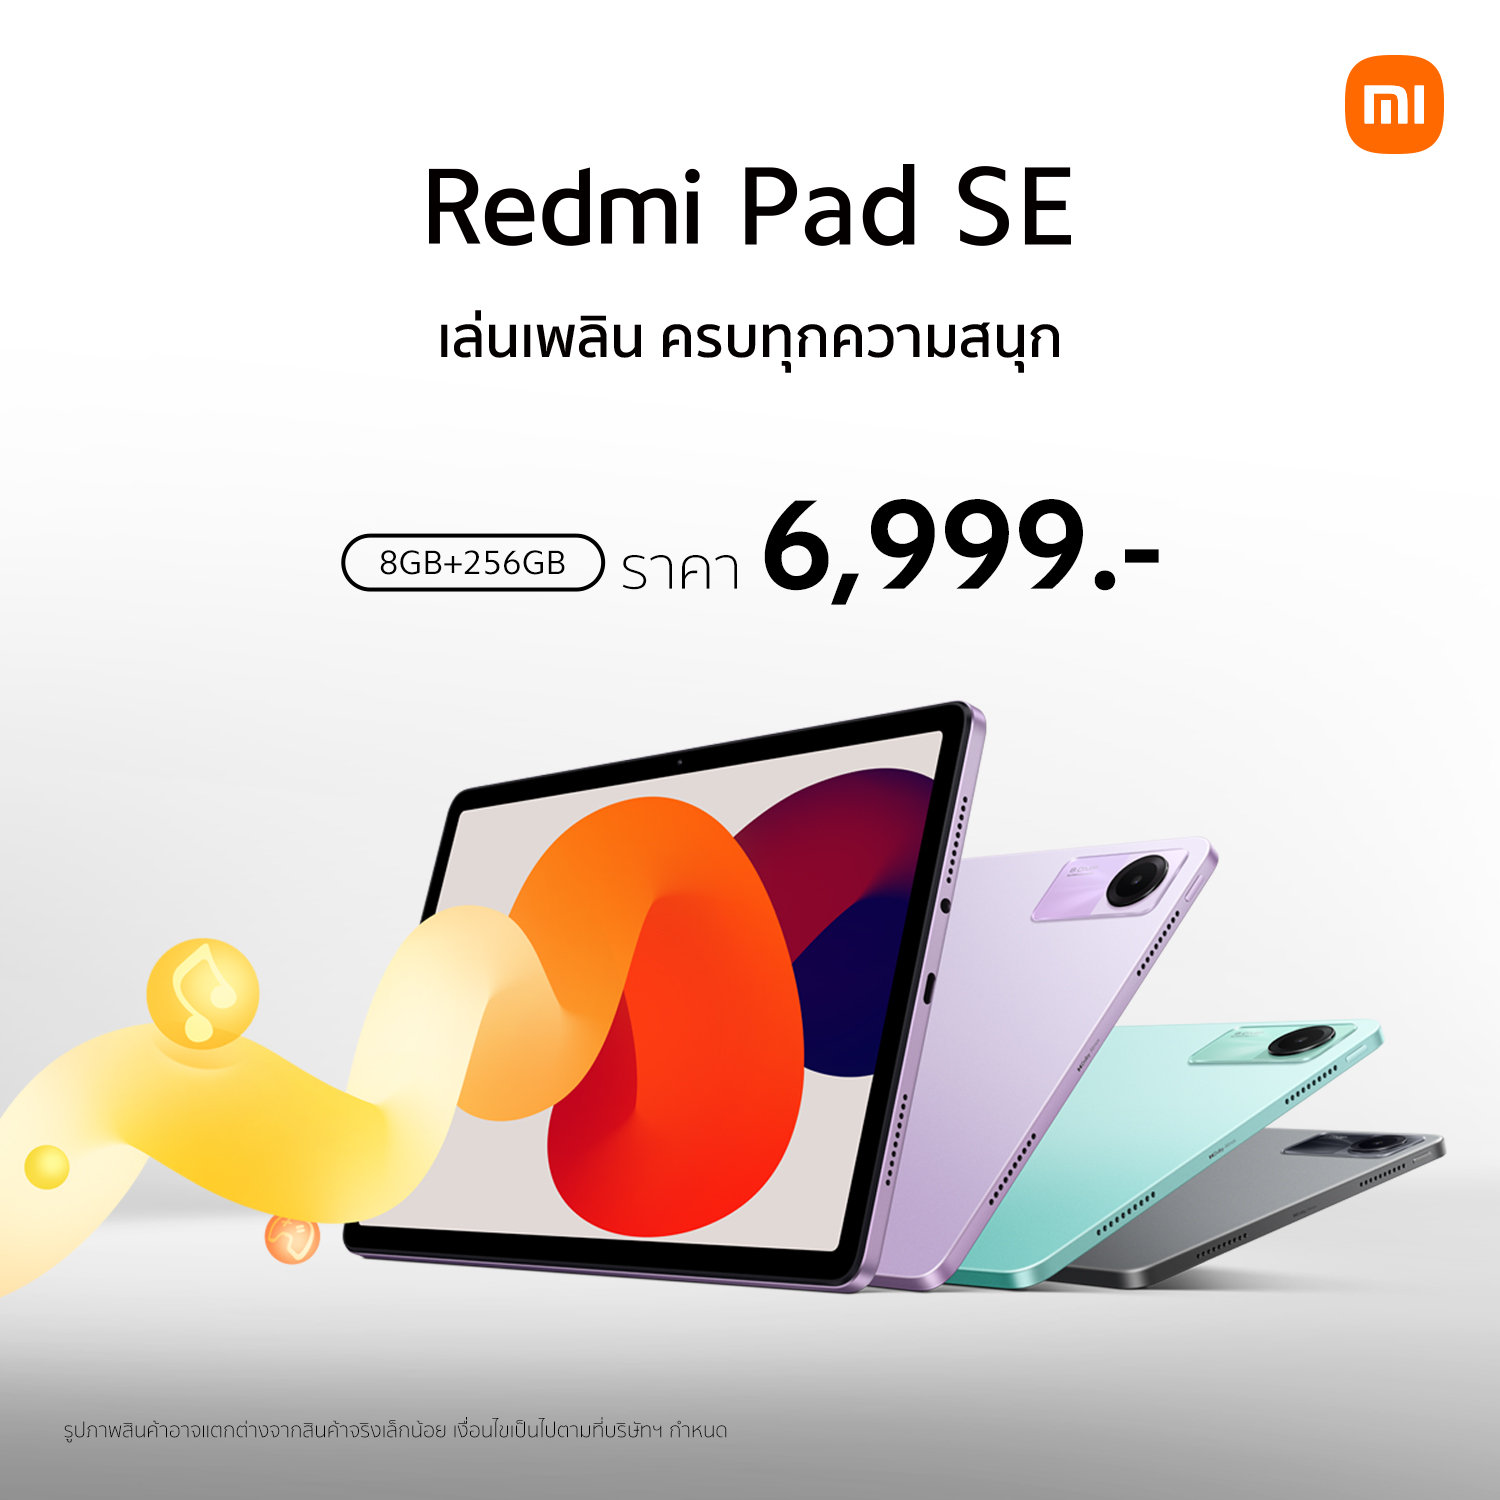 Redmi Pad SE ความจุใหม่ใหญ่กว่าเดิม 8GB+256GB ในราคาเพียง 6,999 บาท  วางจำหน่ายอย่างเป็นทางการในประเทศไทยแล้ววันนี้!